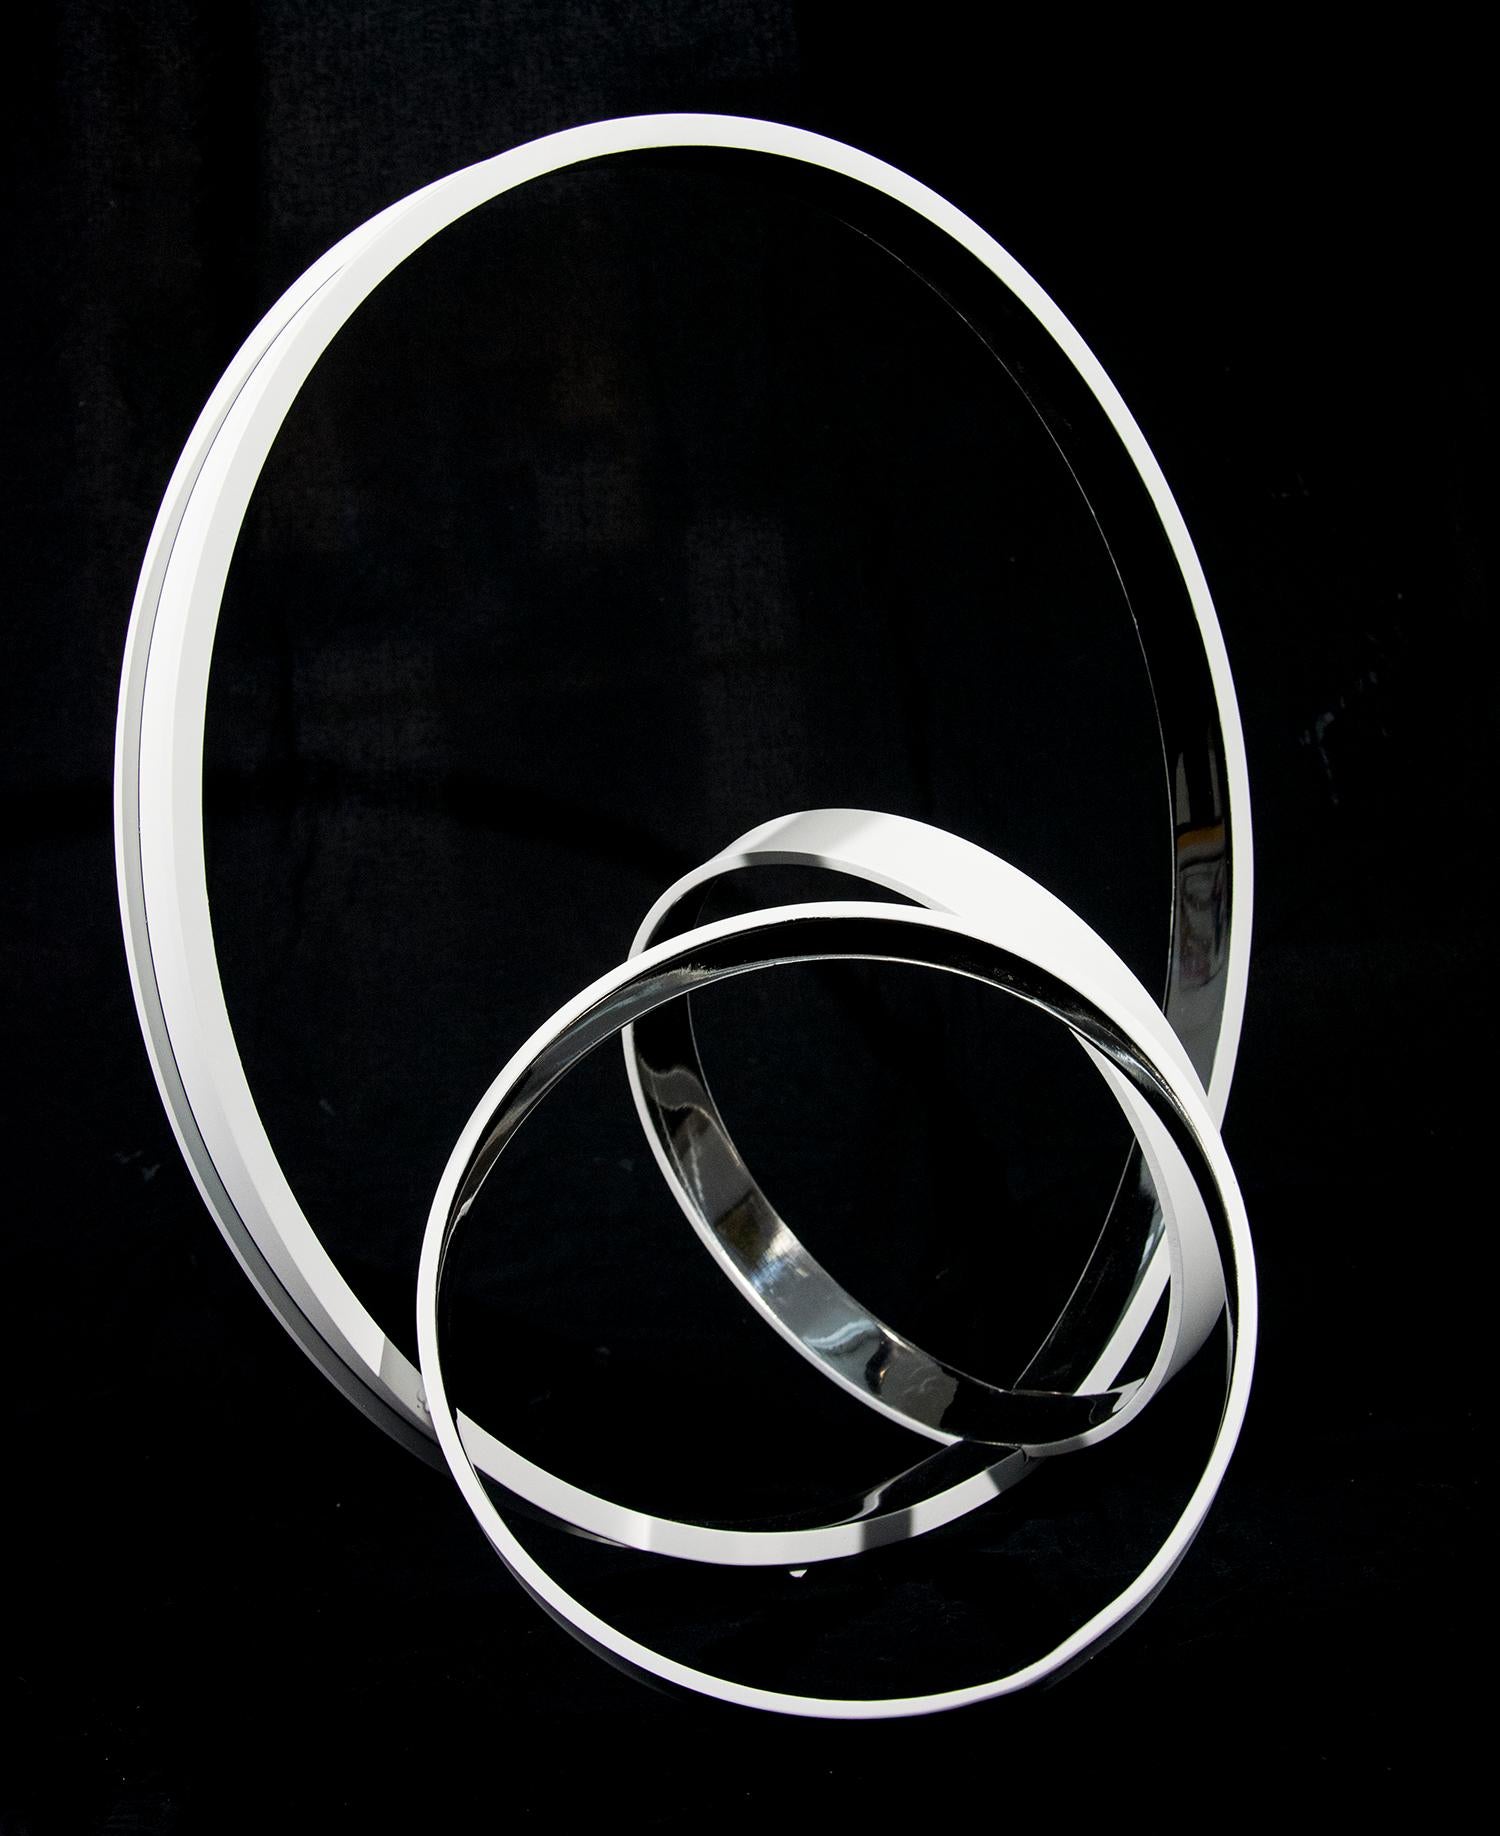 Des anneaux d'acier inoxydable, polis d'une grande brillance à l'extérieur et d'un blanc mat à l'intérieur, se croisent à des angles dynamiques dans cette élégante sculpture de Philippe Pallafray. Son travail est conçu pour représenter la dualité de